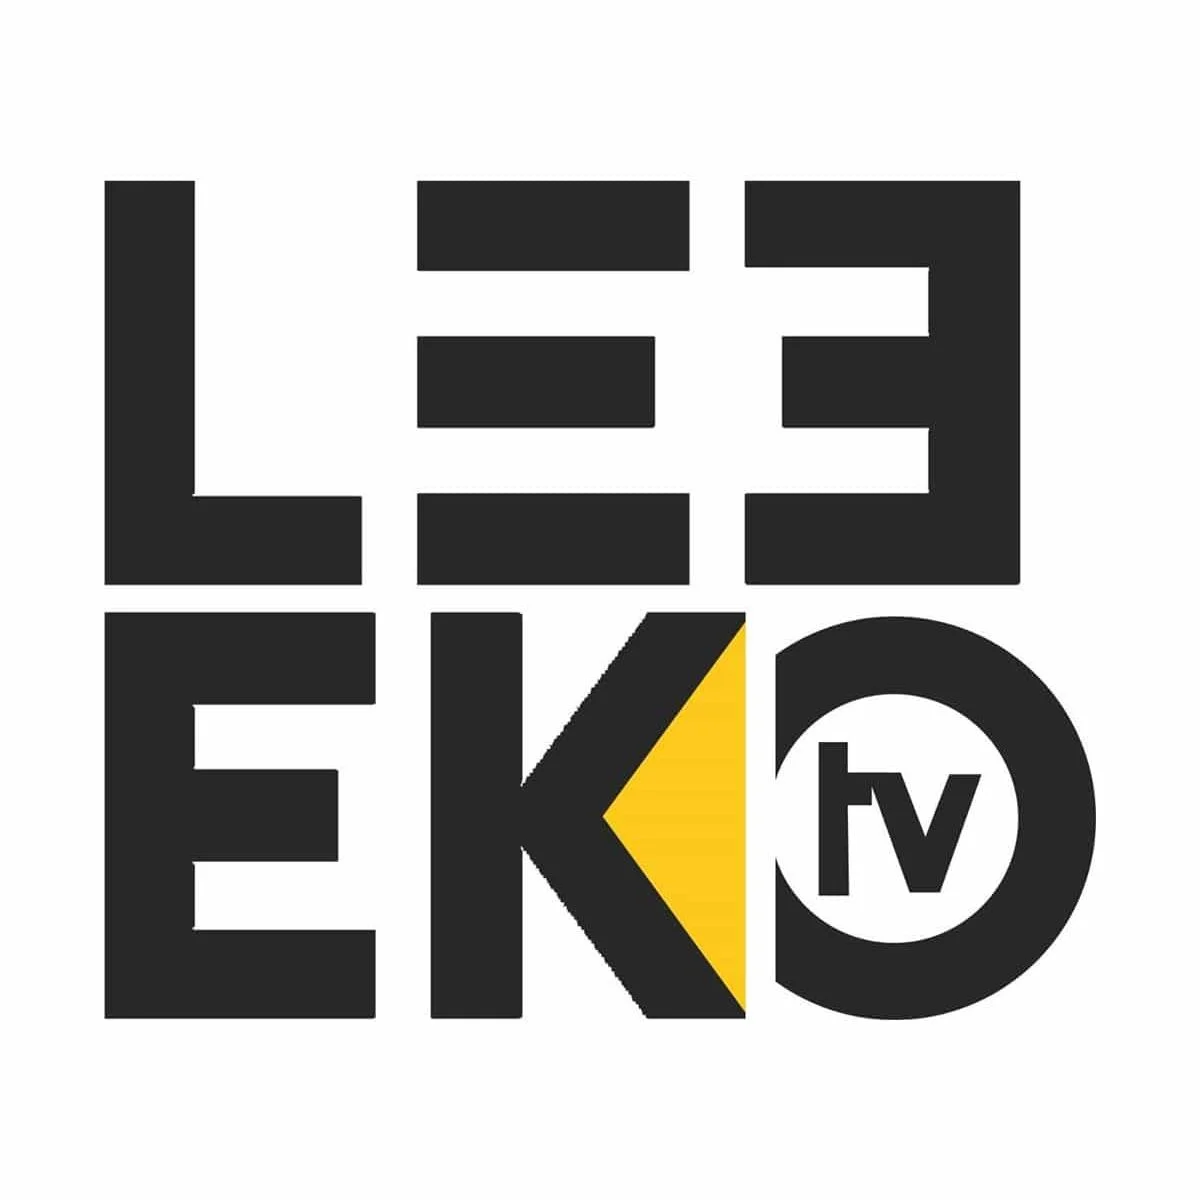 Leeeko TV